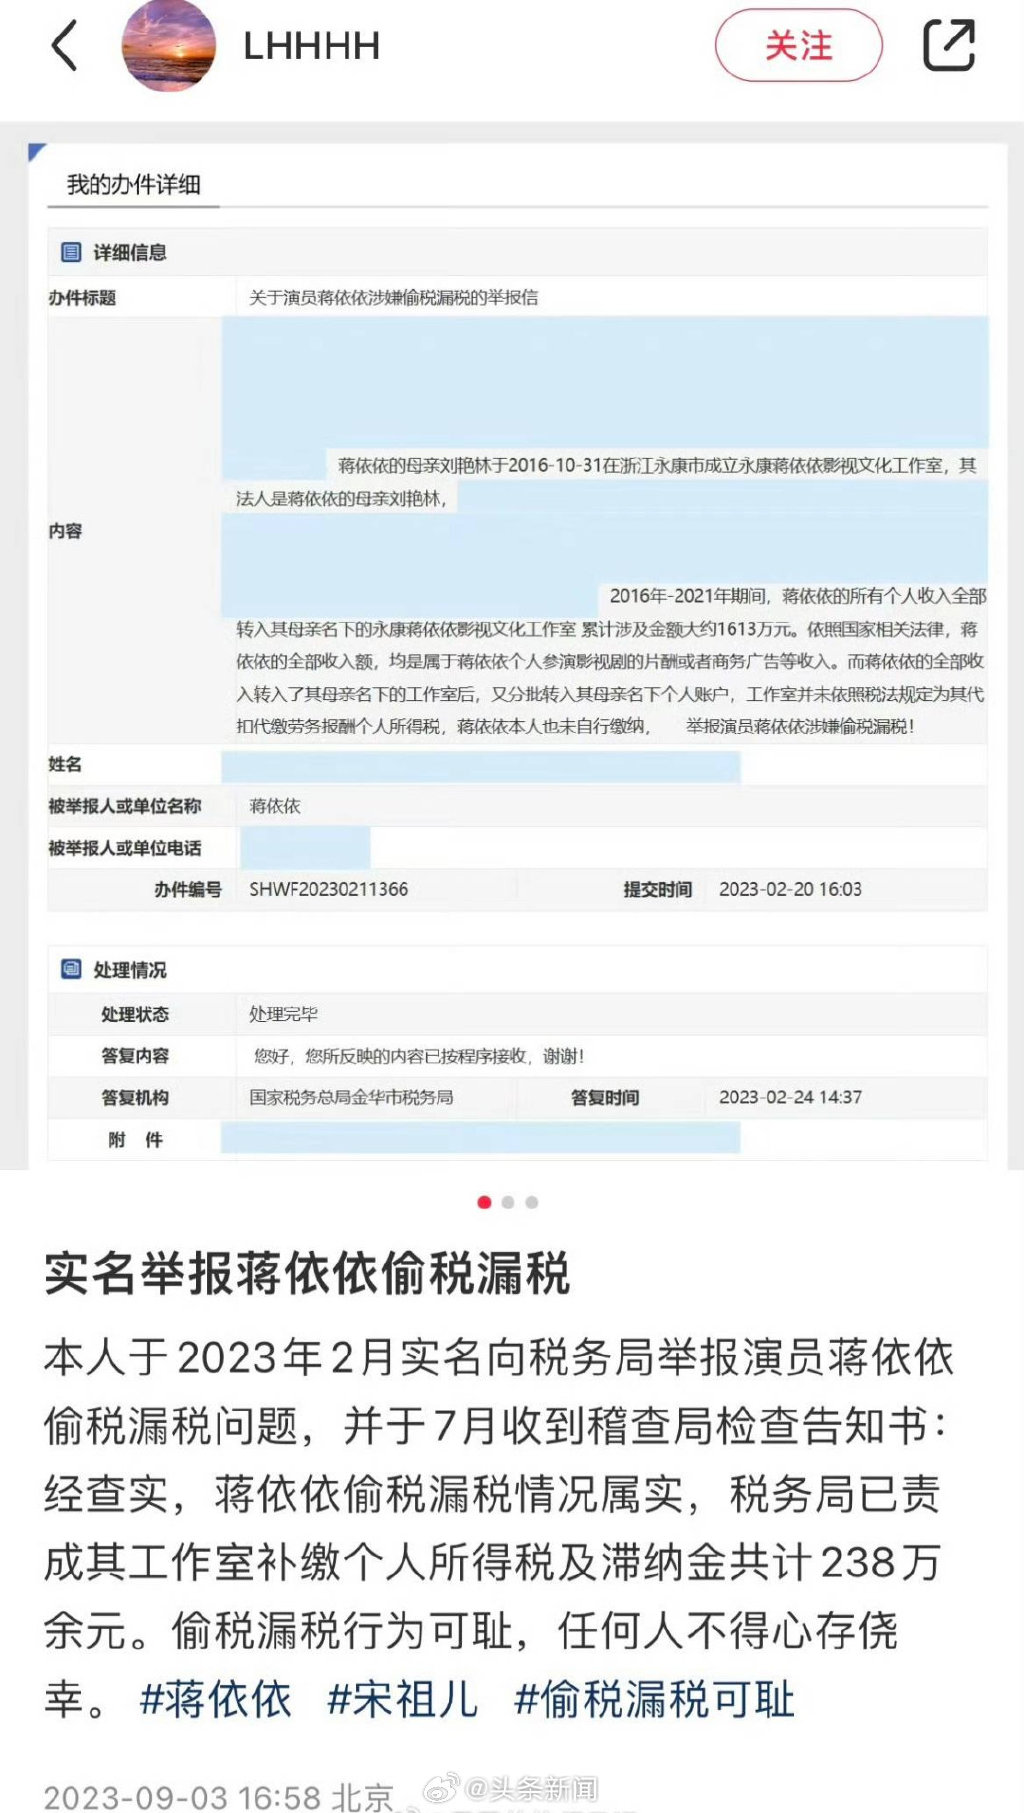 爆料人聲稱早在2021年稅務局曾約談蔣依依調查她的稅務狀況。